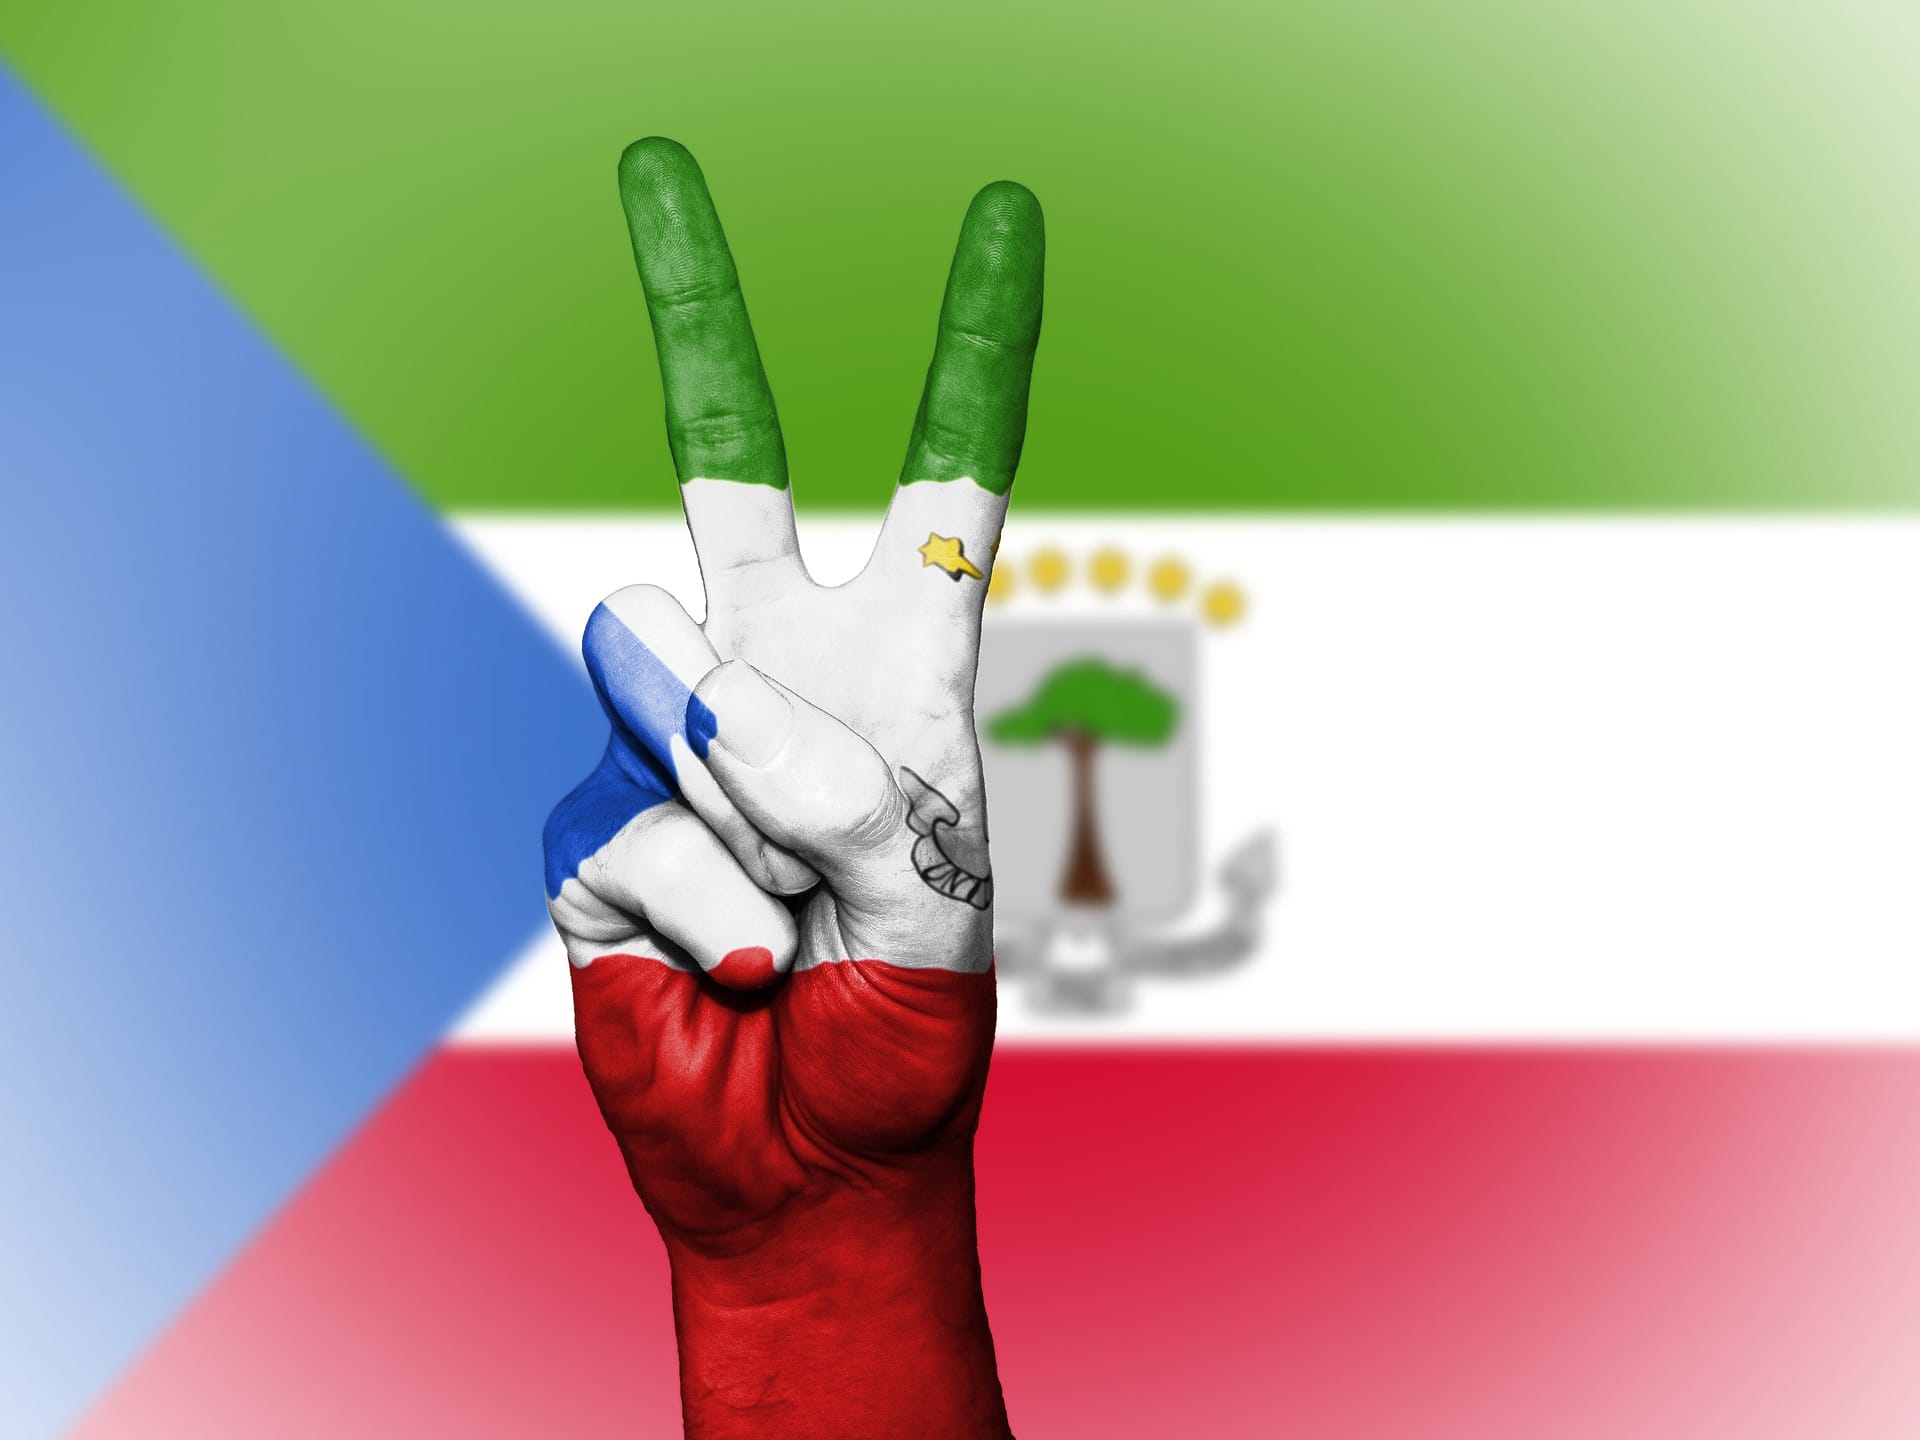 Equatorial Guinea flag